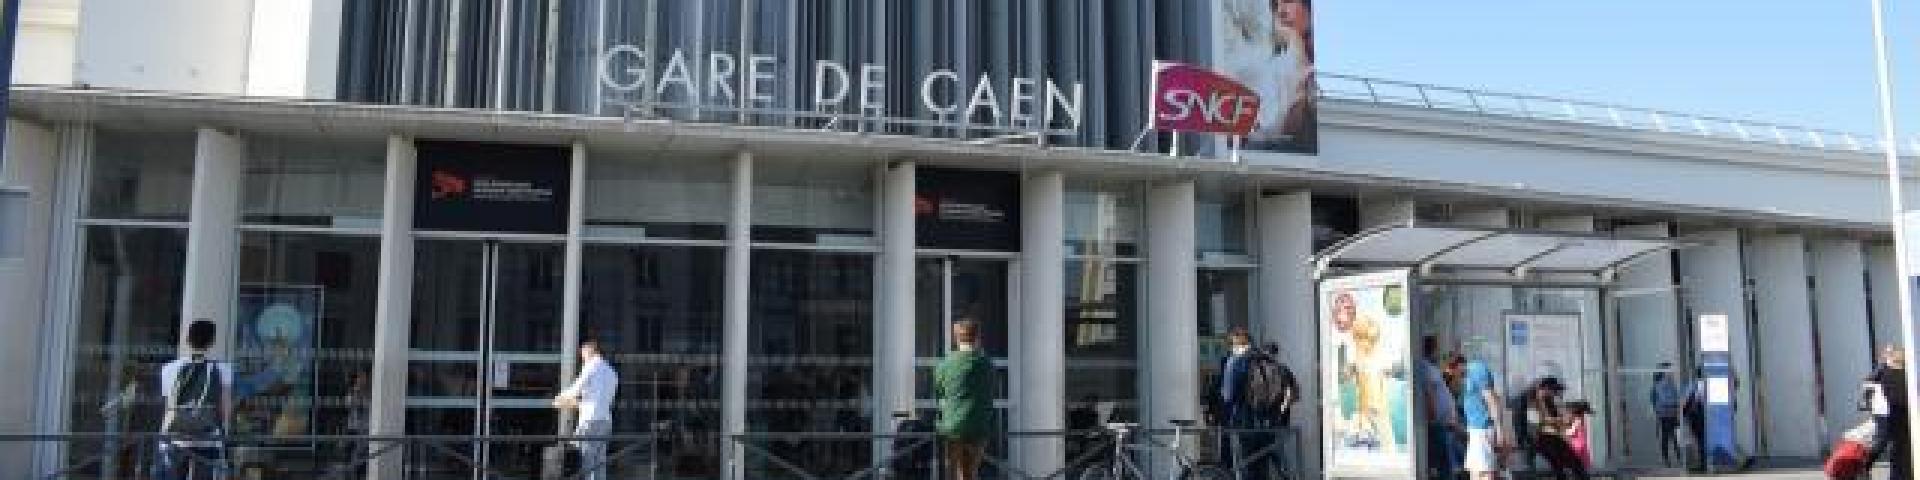 Gare de Caen - Bandeau - partenaire - Builders